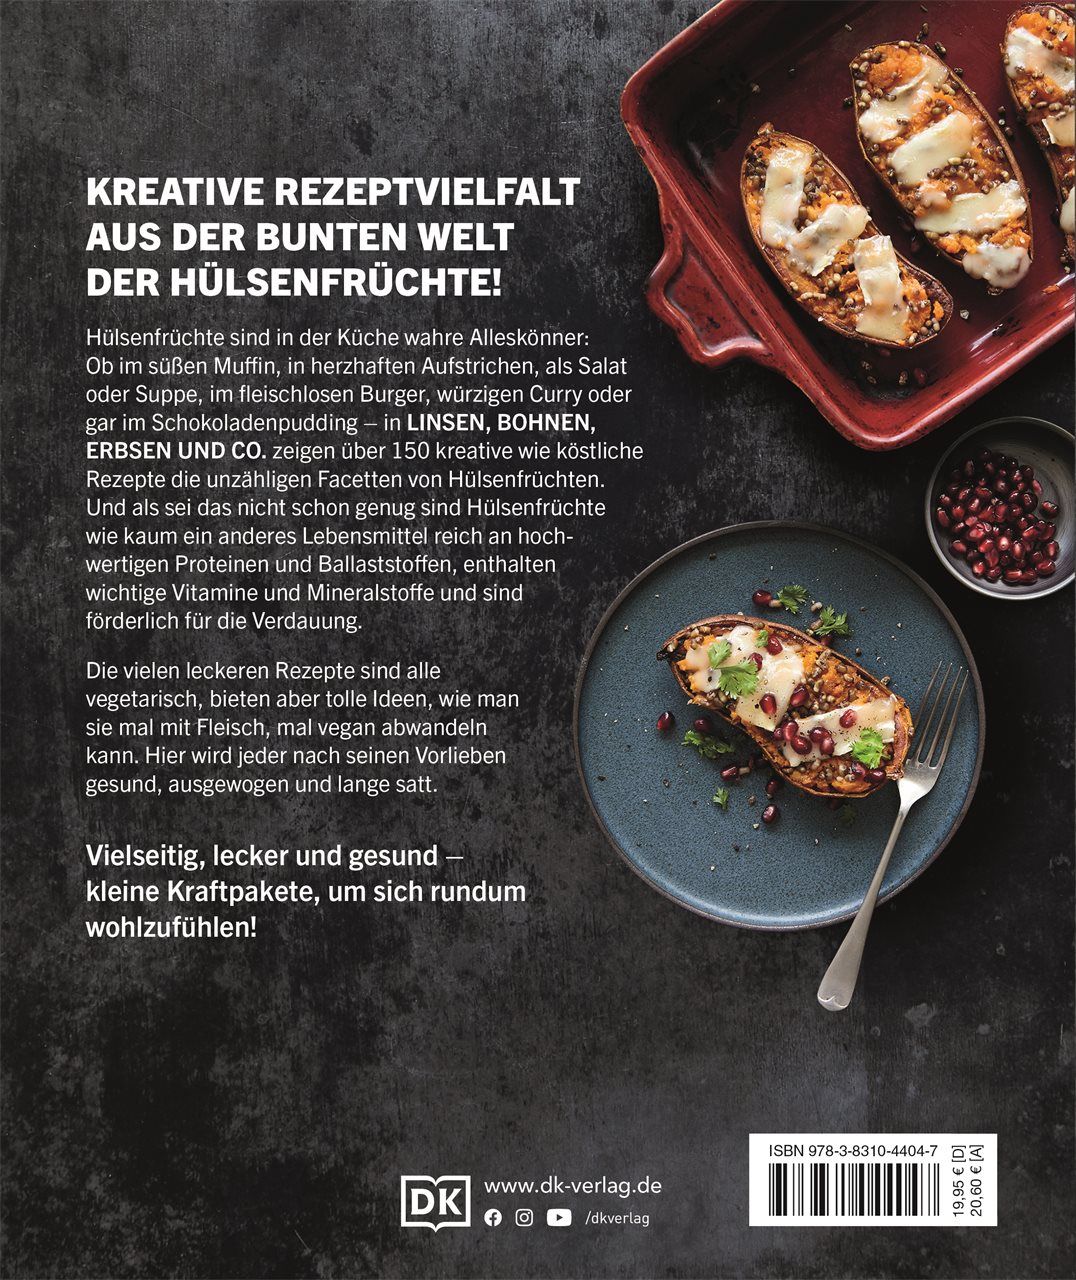 Linsen, Bohnen, Erbsen und Co.: Das Hülsenfrüchte-Kochbuch